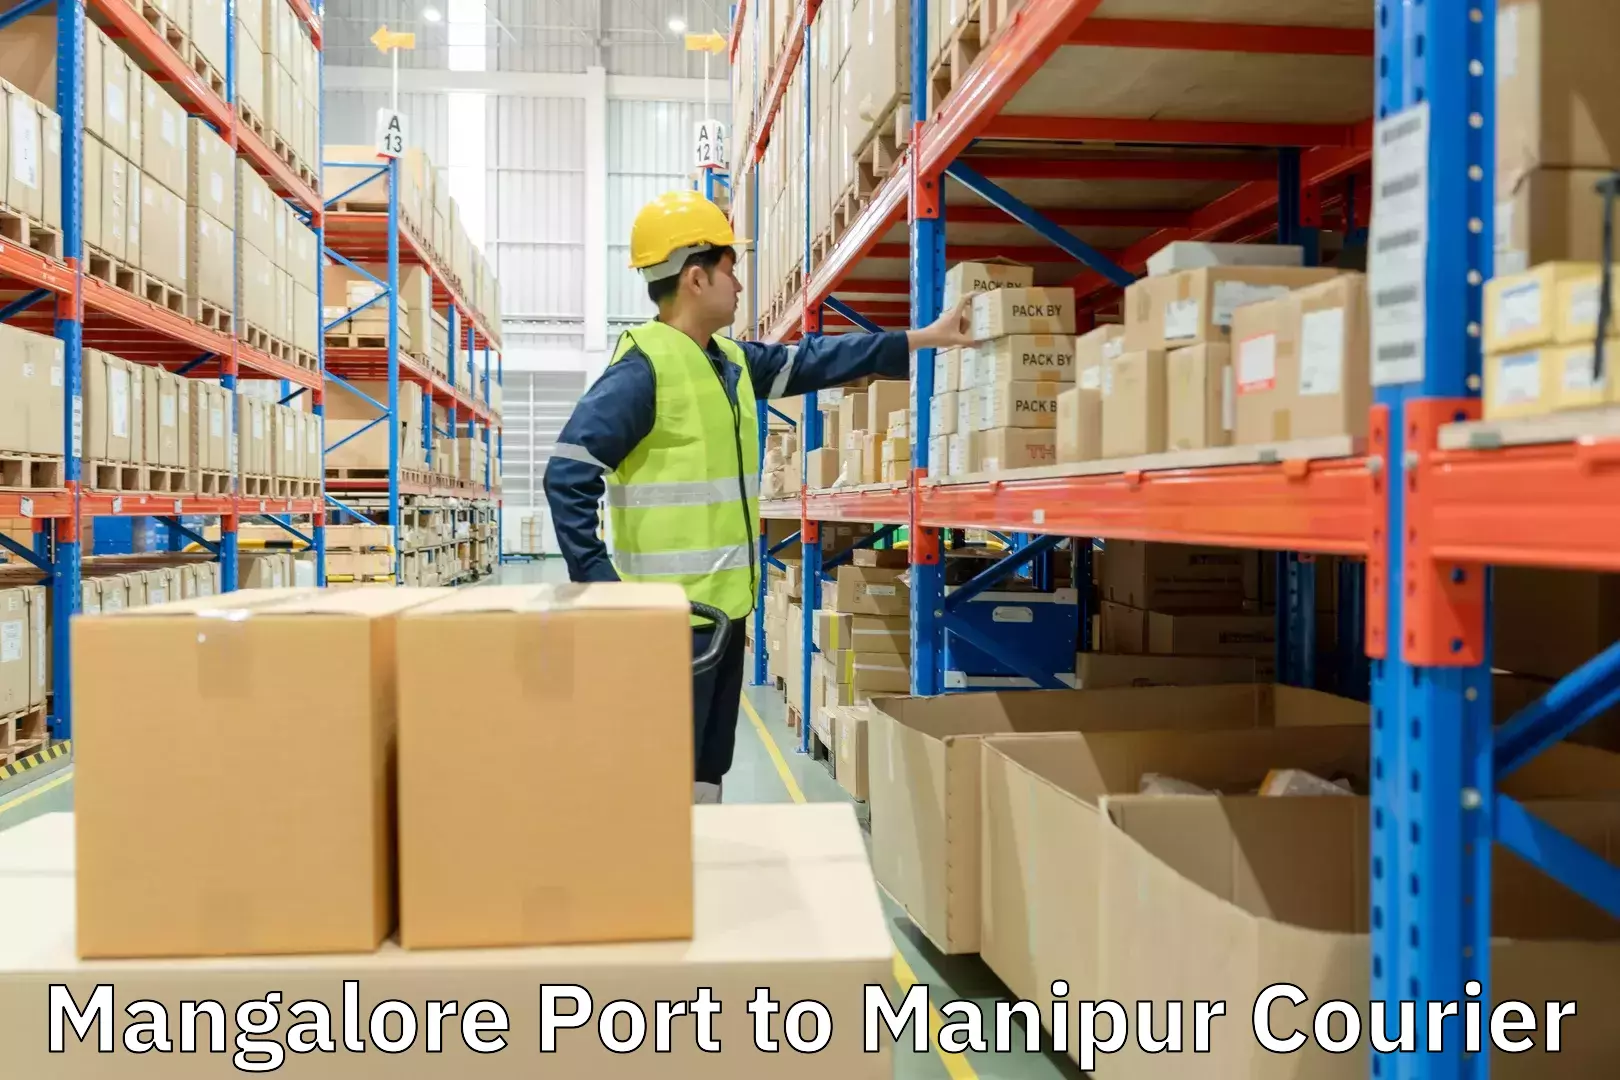 Smart shipping technology Mangalore Port to Kaptipada